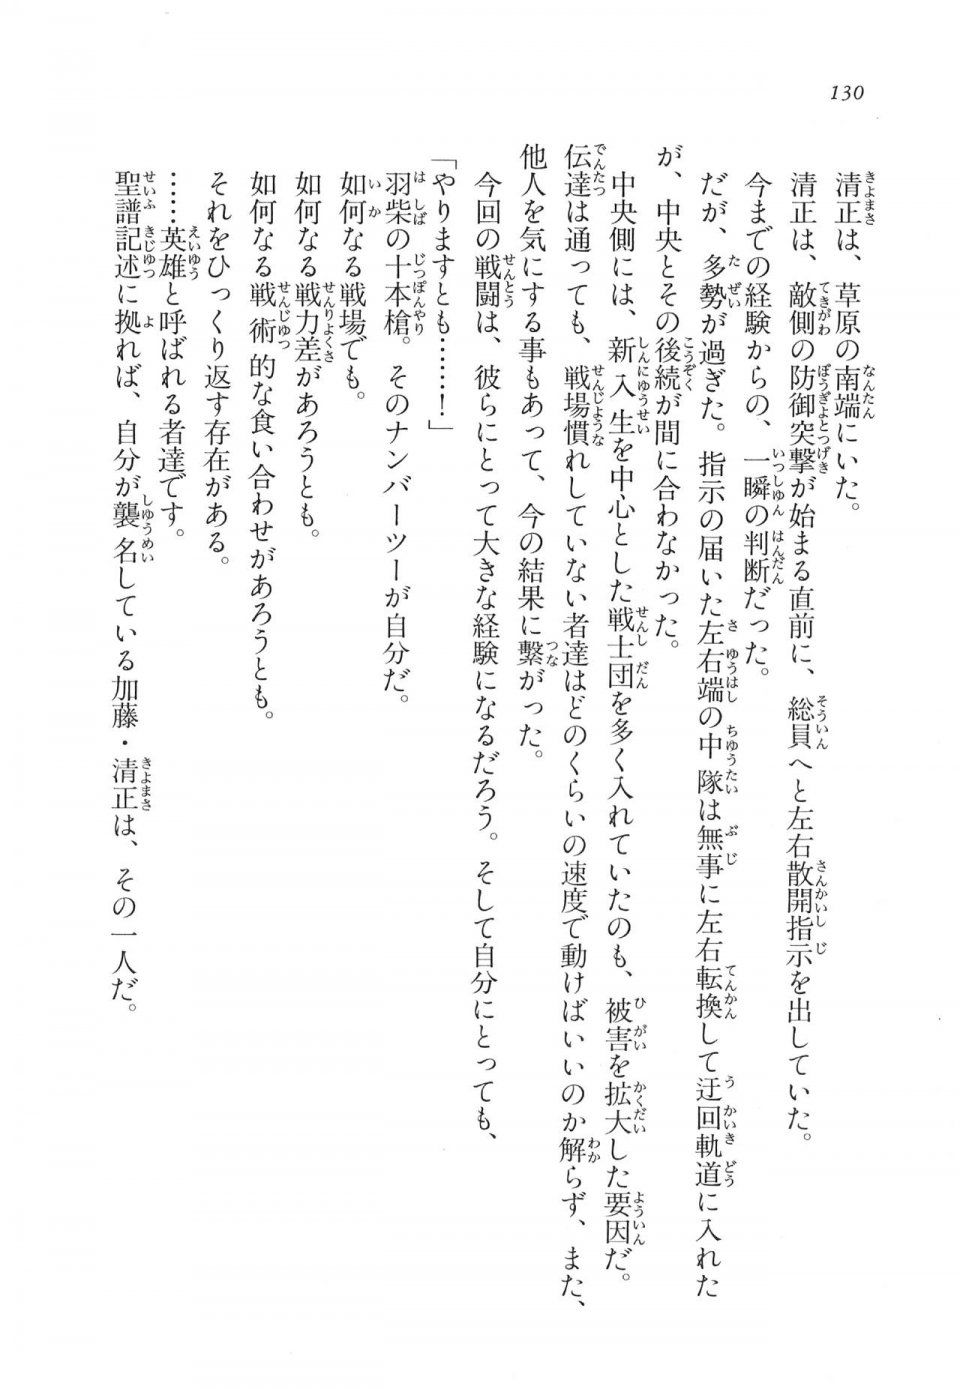 Kyoukai Senjou no Horizon LN Vol 11(5A) - Photo #130